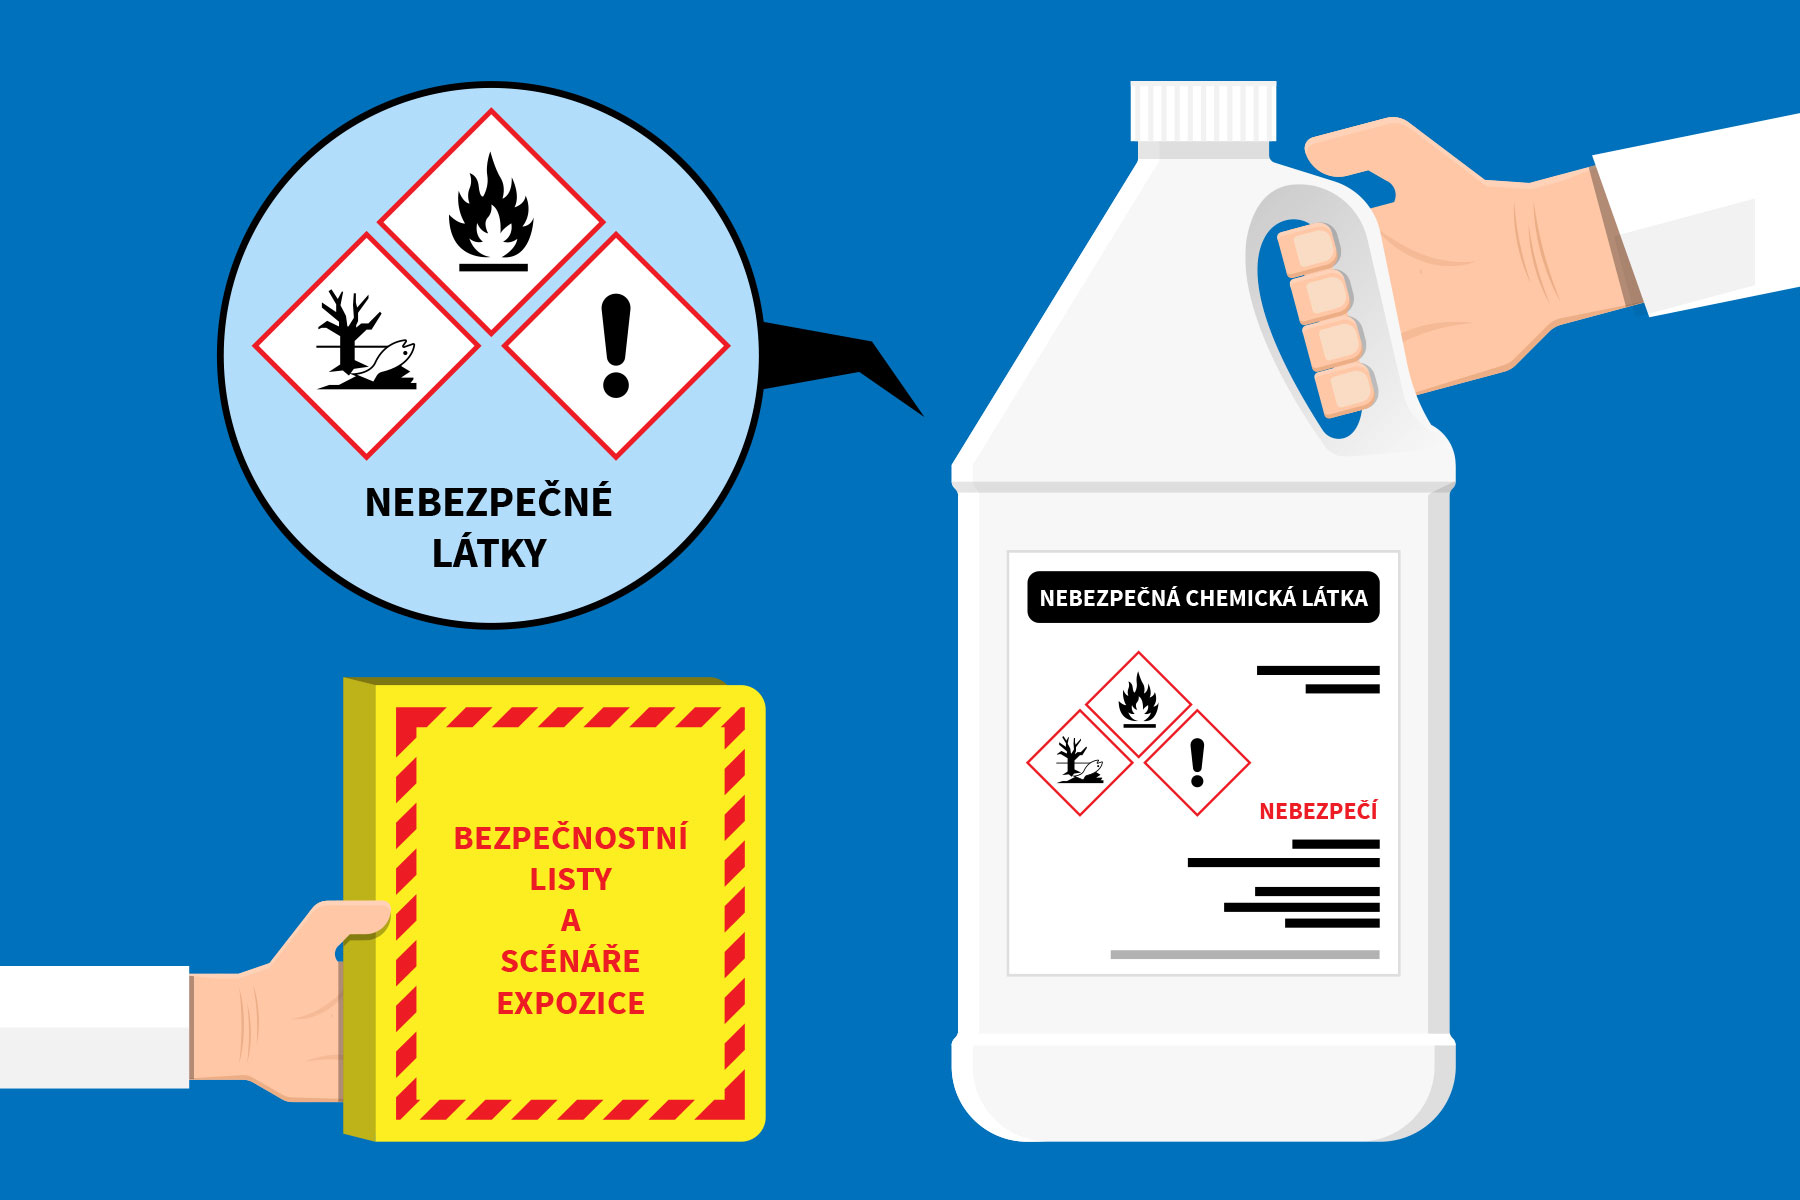 Bezpečnostní listy a scénáře expozice nebezpečných látek